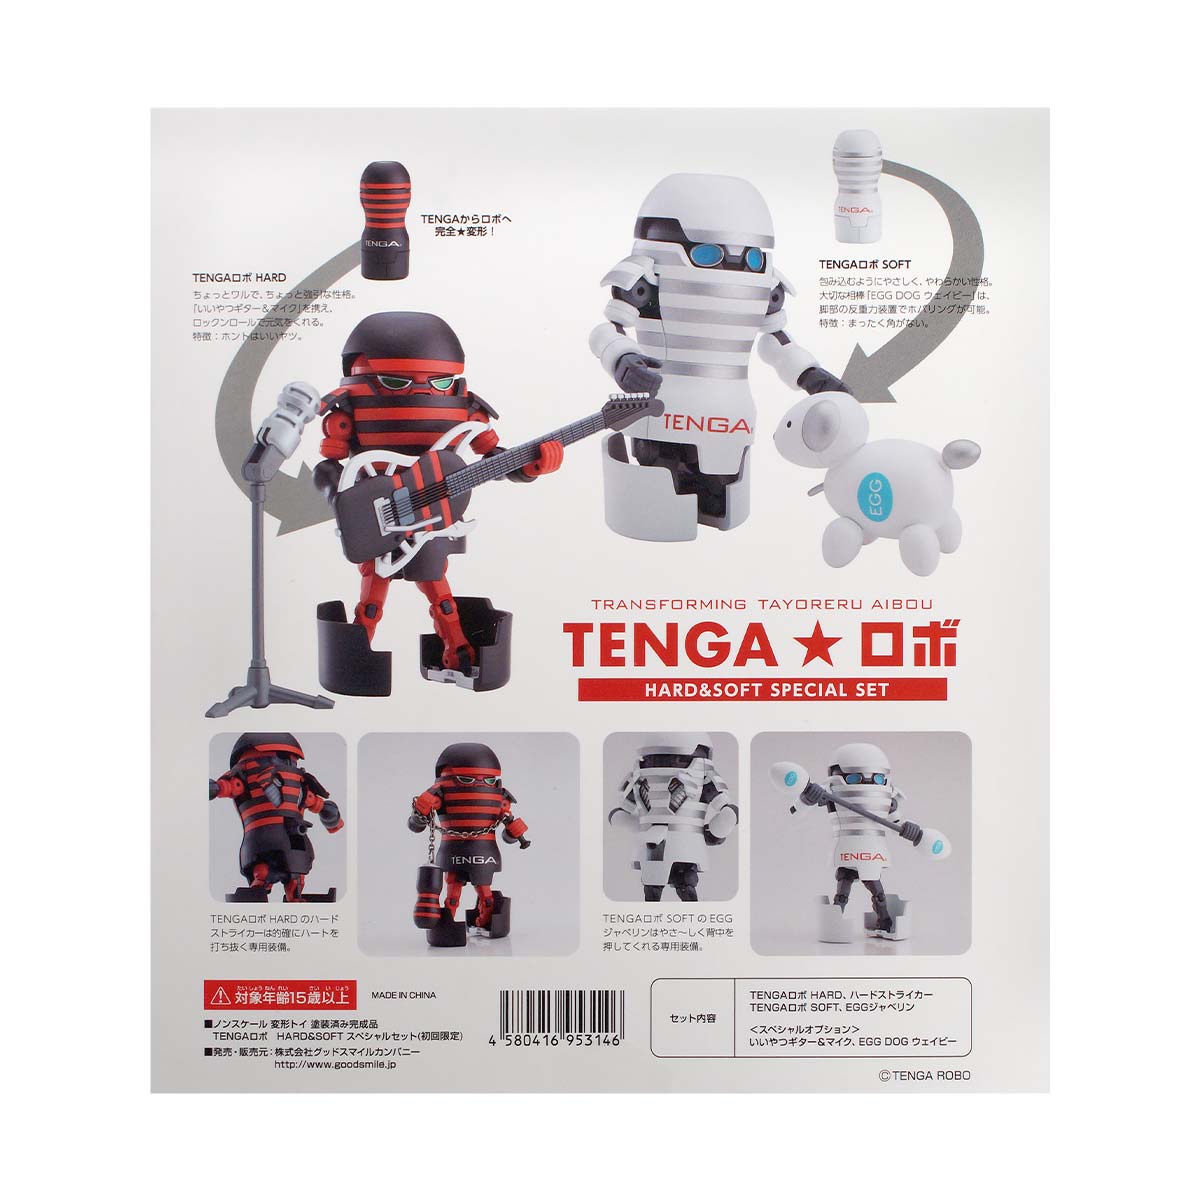 TENGA ロボ HARD & SOFT スペシャルセット-p_3